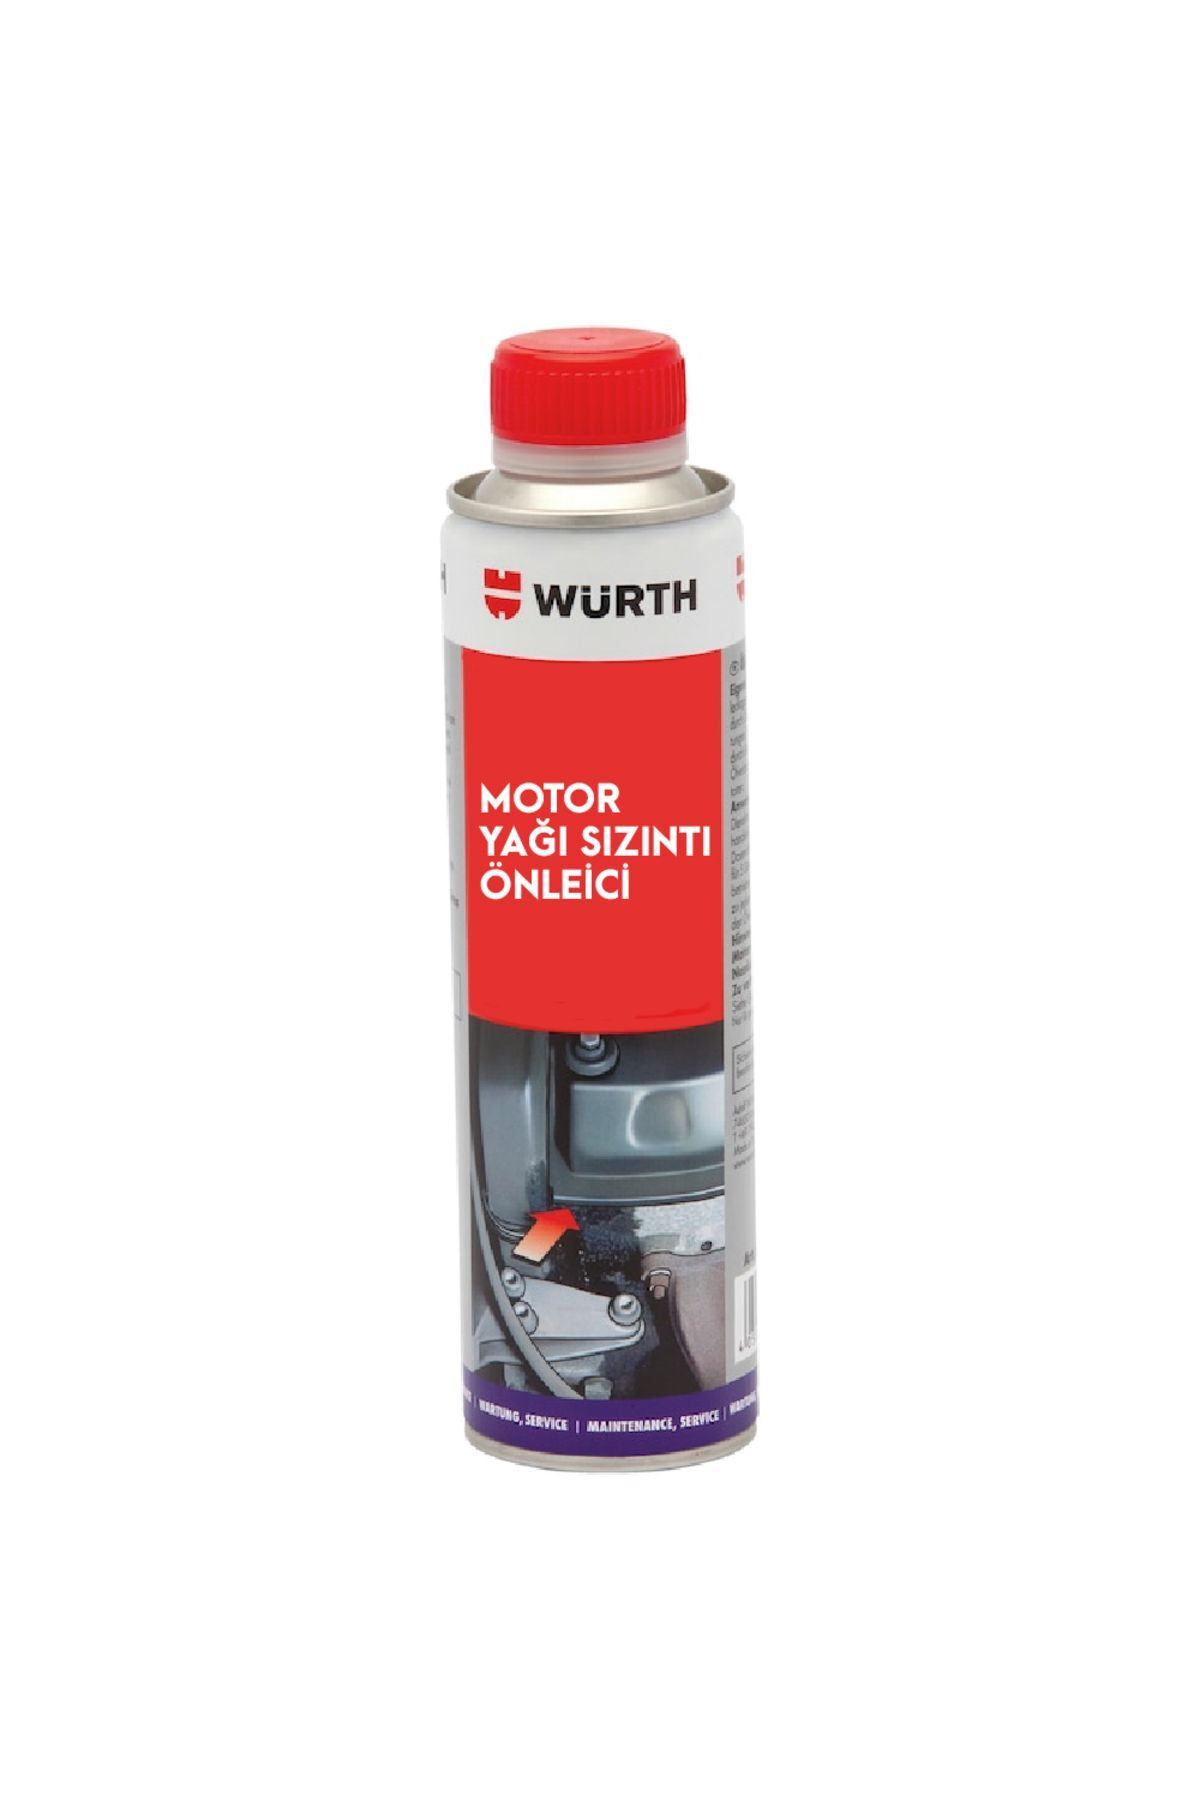 Würth Motor Yağı Sızıntı Önleyici Tıkayıcı 300 ml